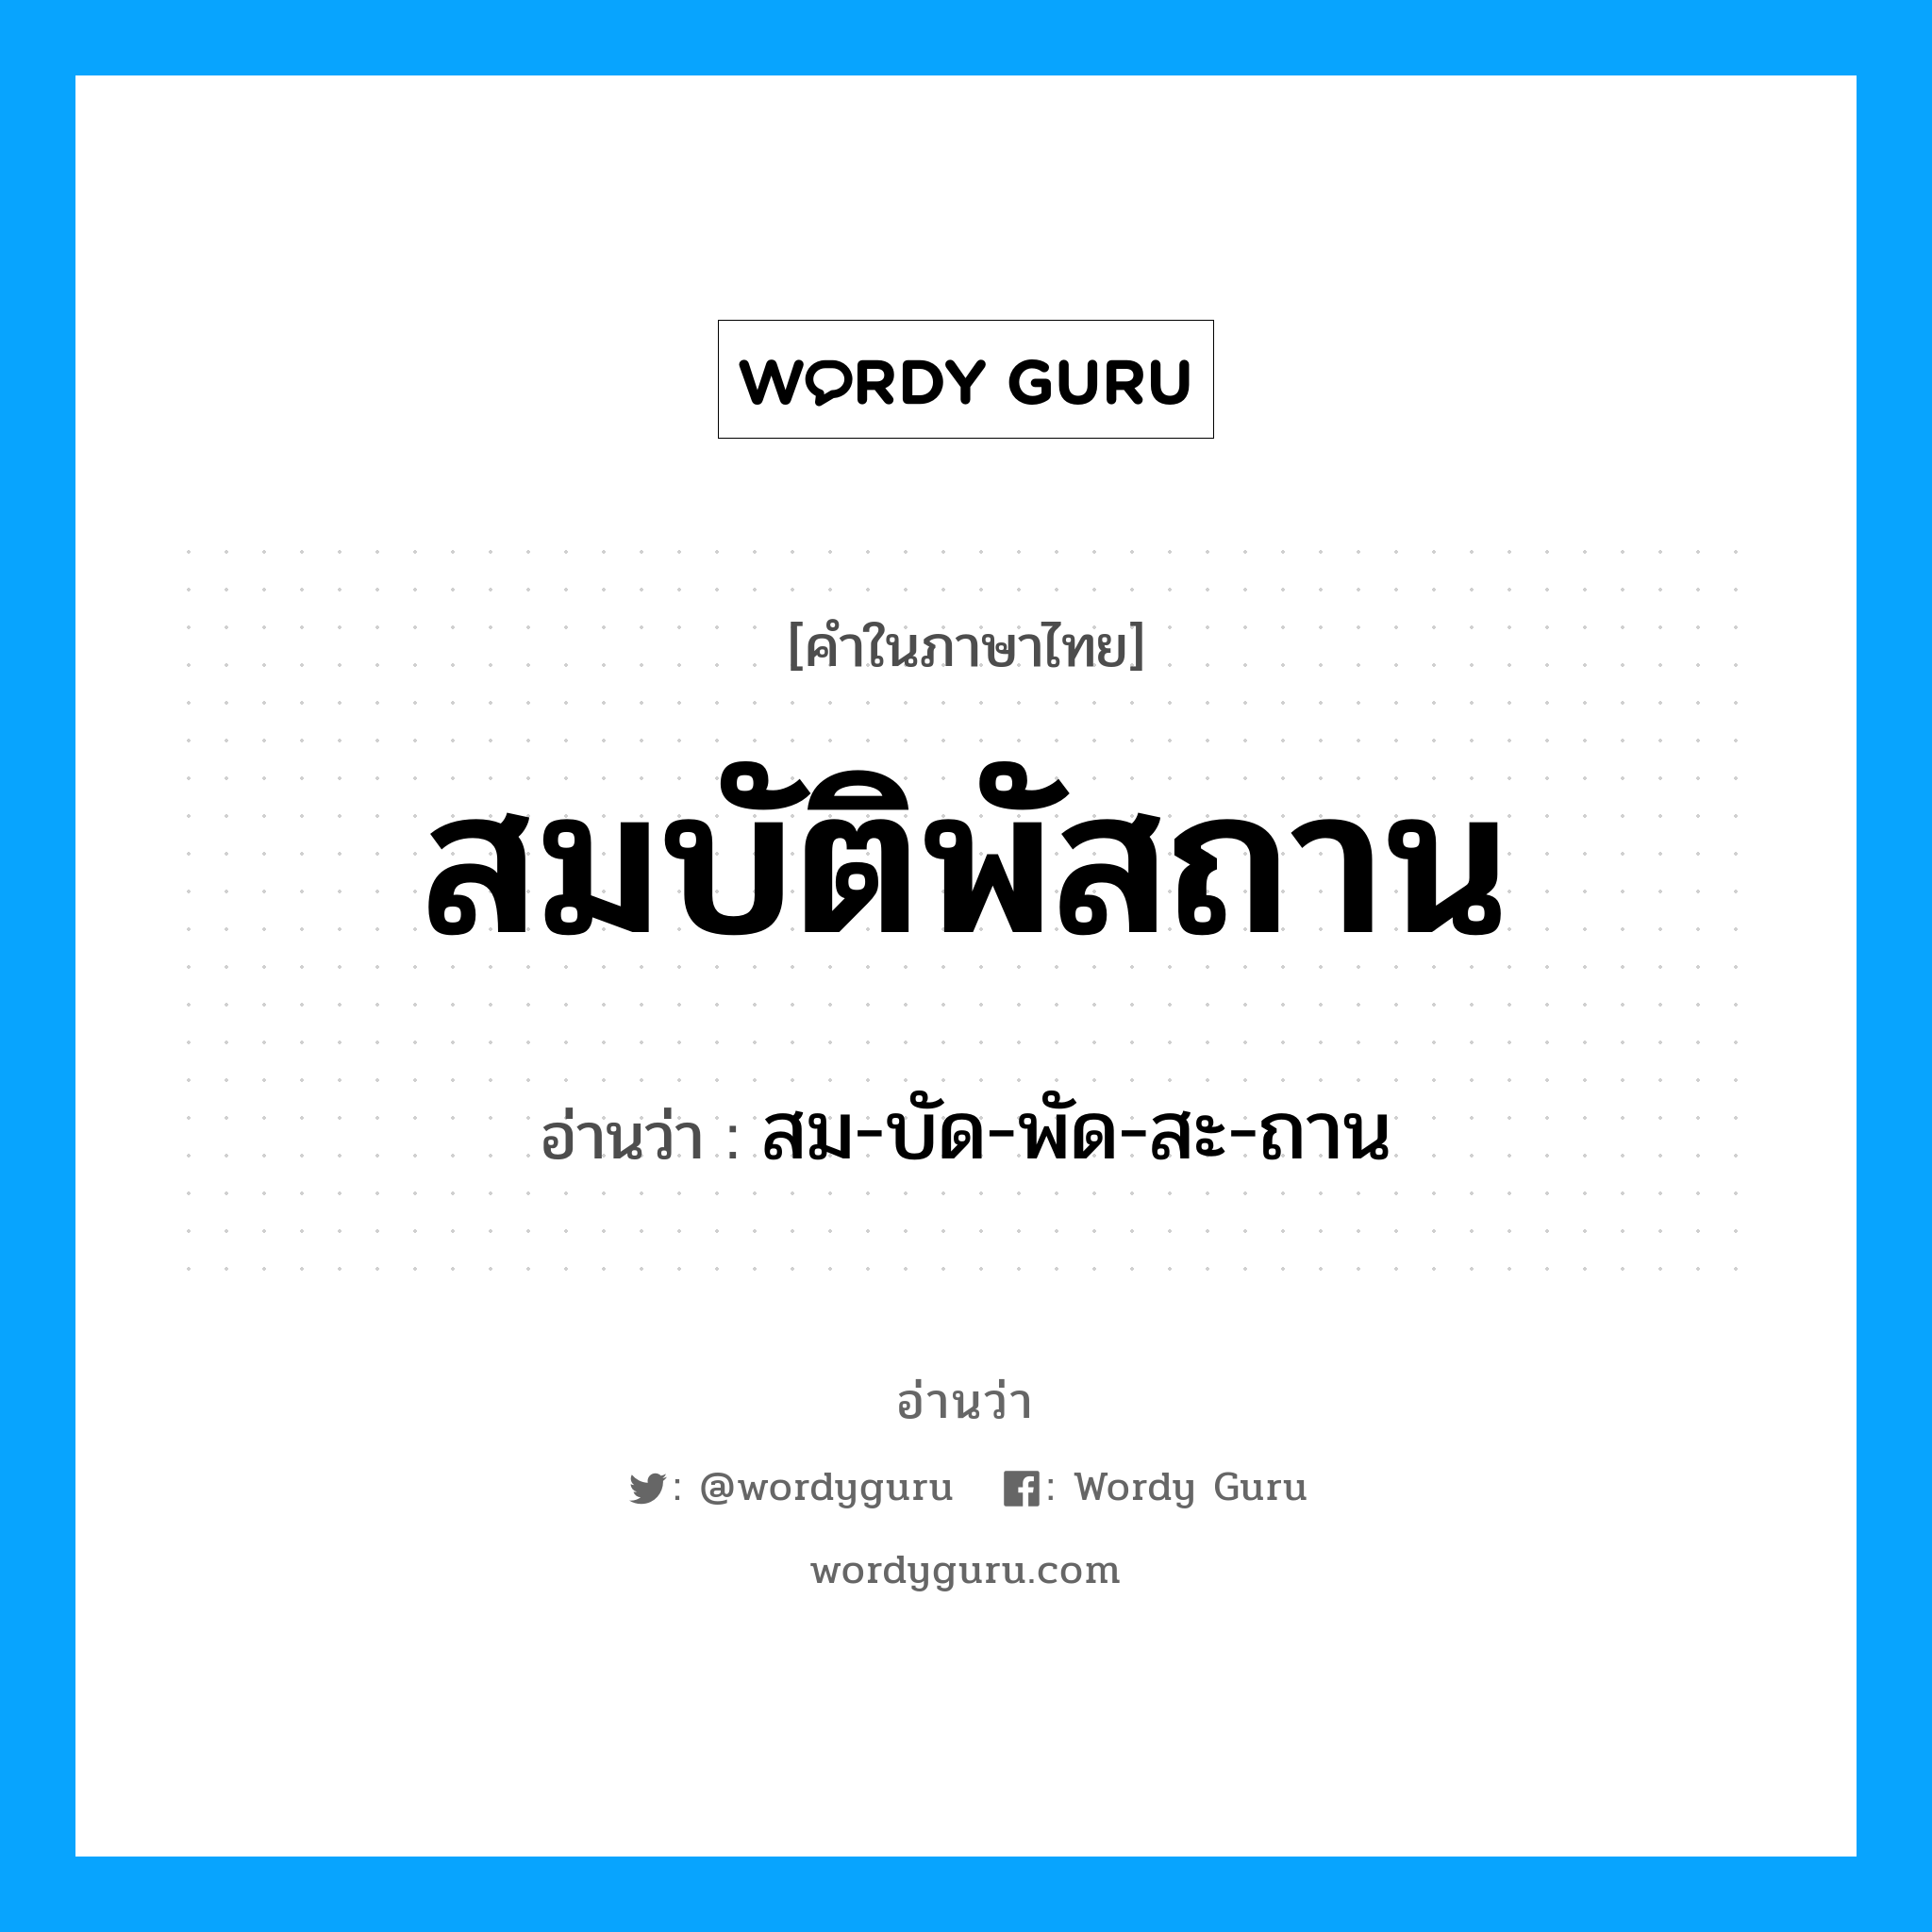 สม-บัด-พัด-สะ-ถาน เป็นคำอ่านของคำไหน?, คำในภาษาไทย สม-บัด-พัด-สะ-ถาน อ่านว่า สมบัติพัสถาน